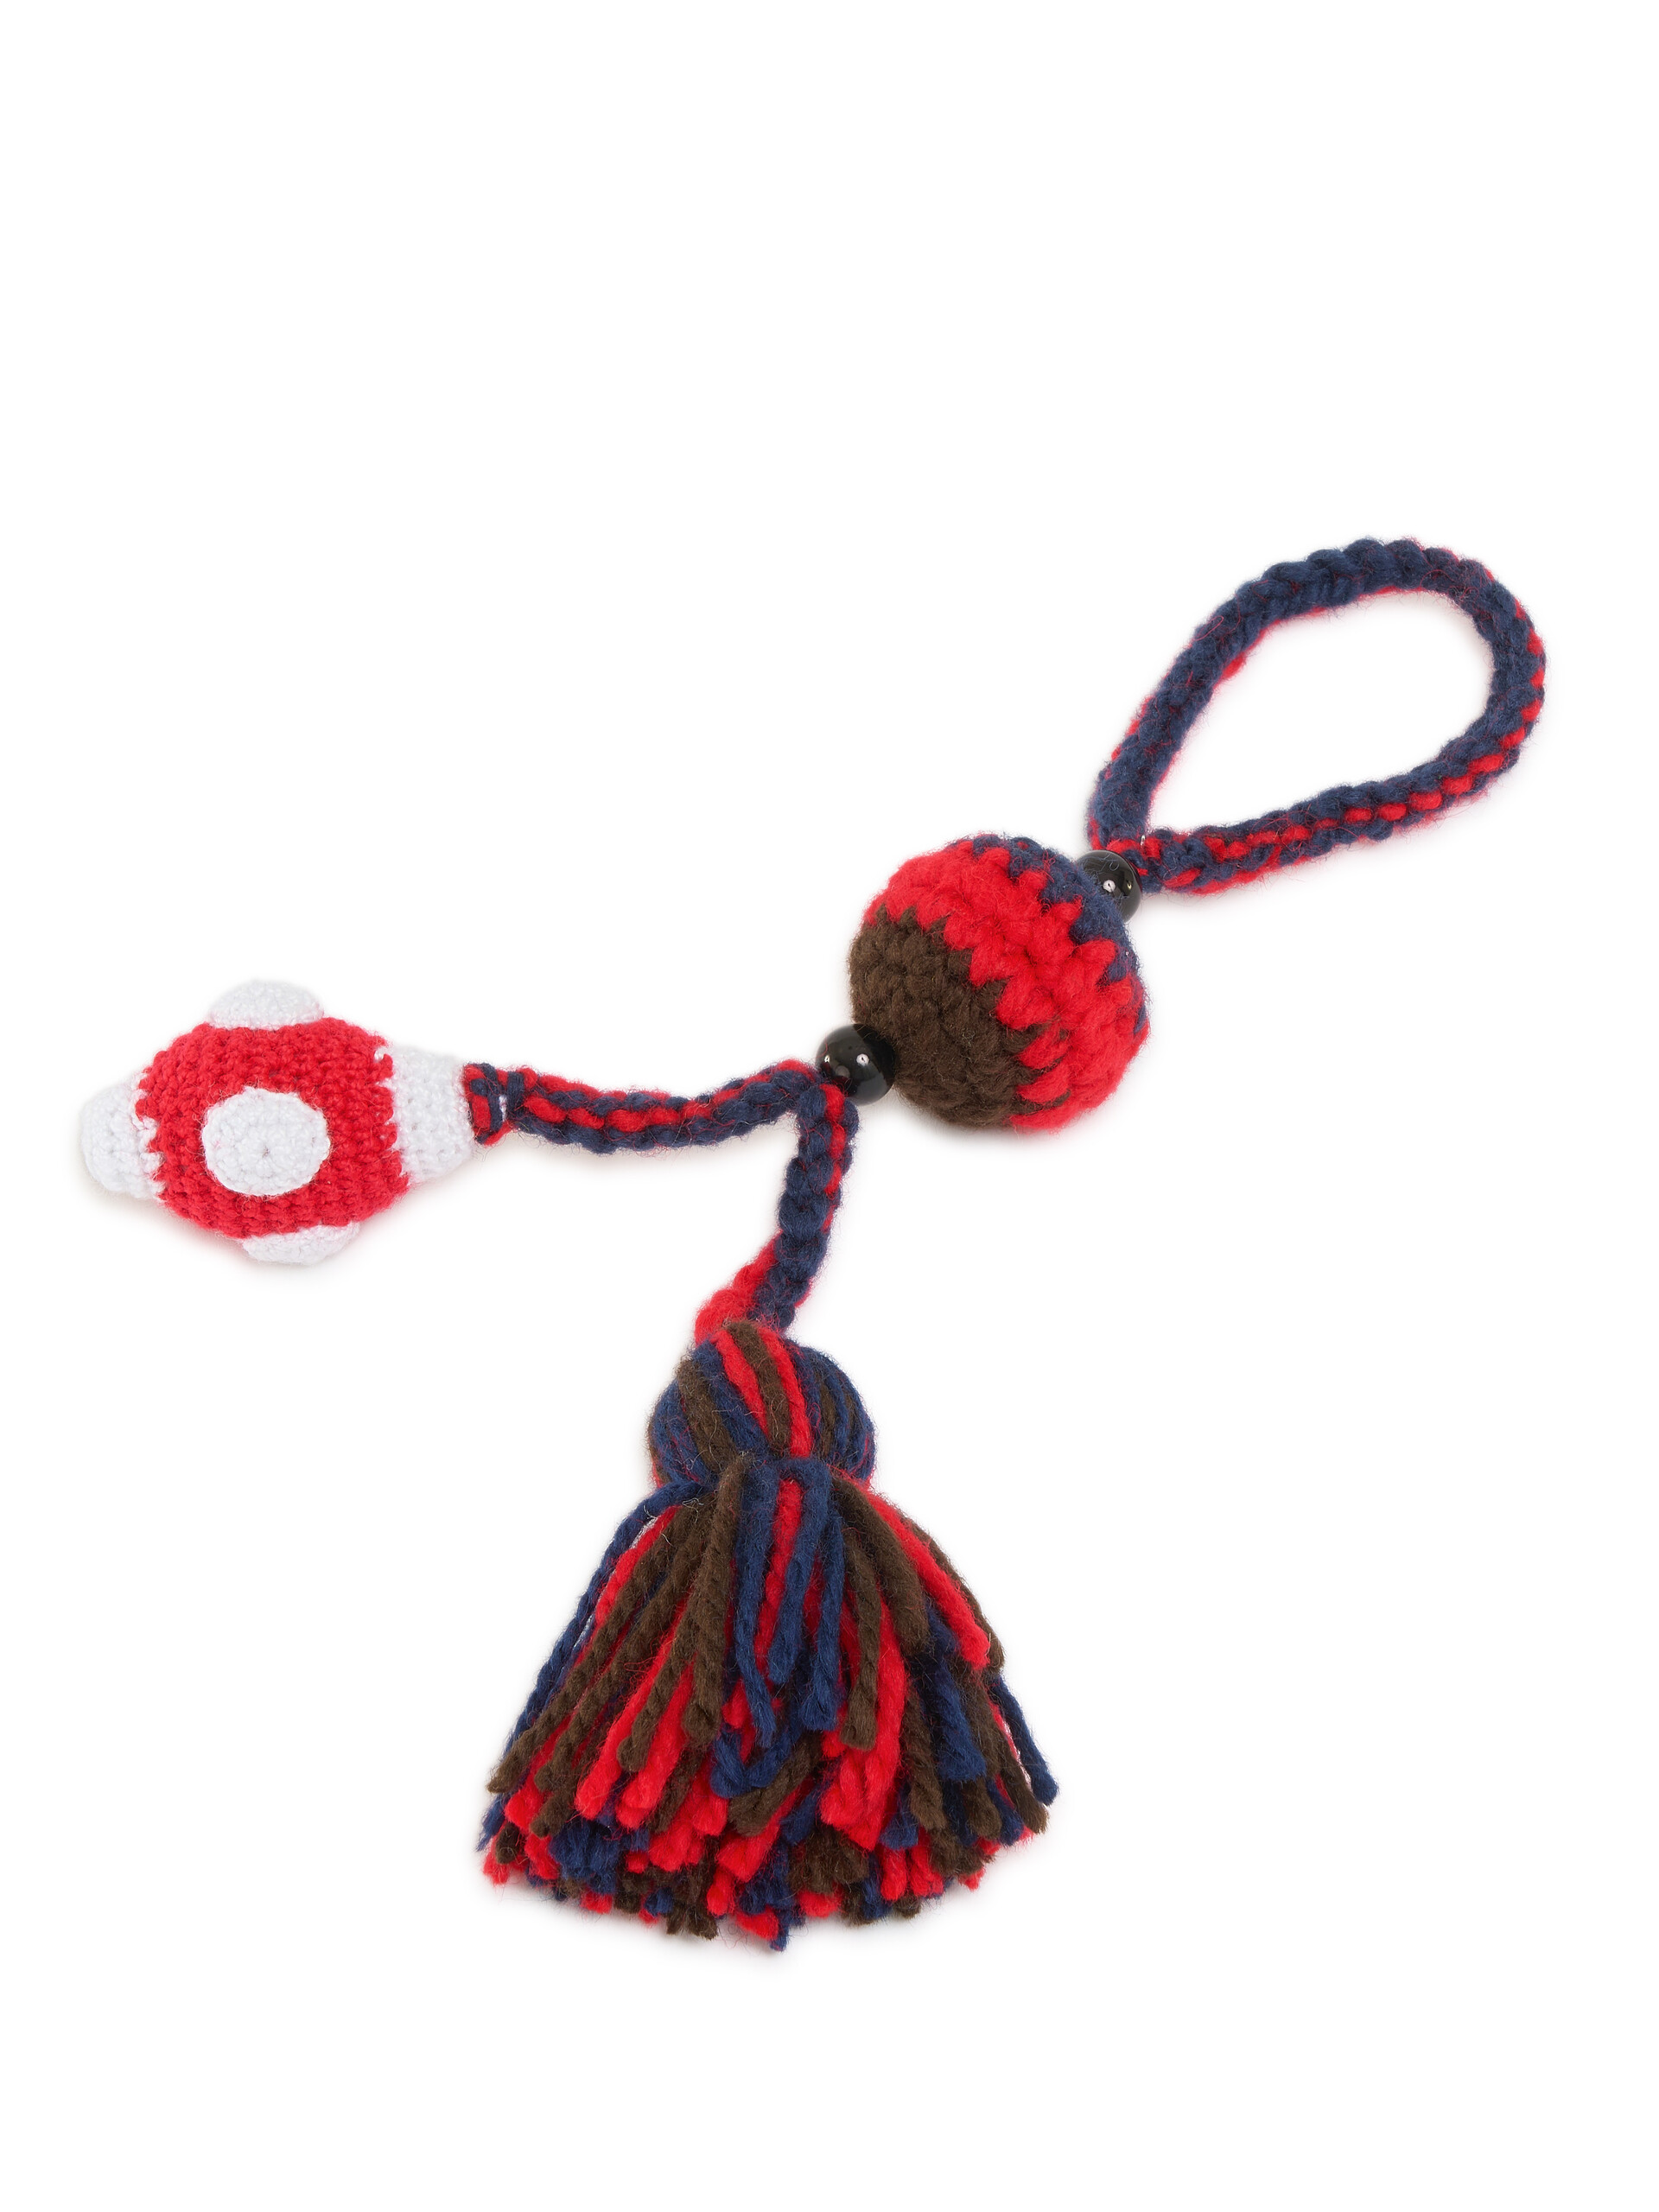 Ciondolo "Fungo" Marni Market In Crochet - Accessori - Image 3